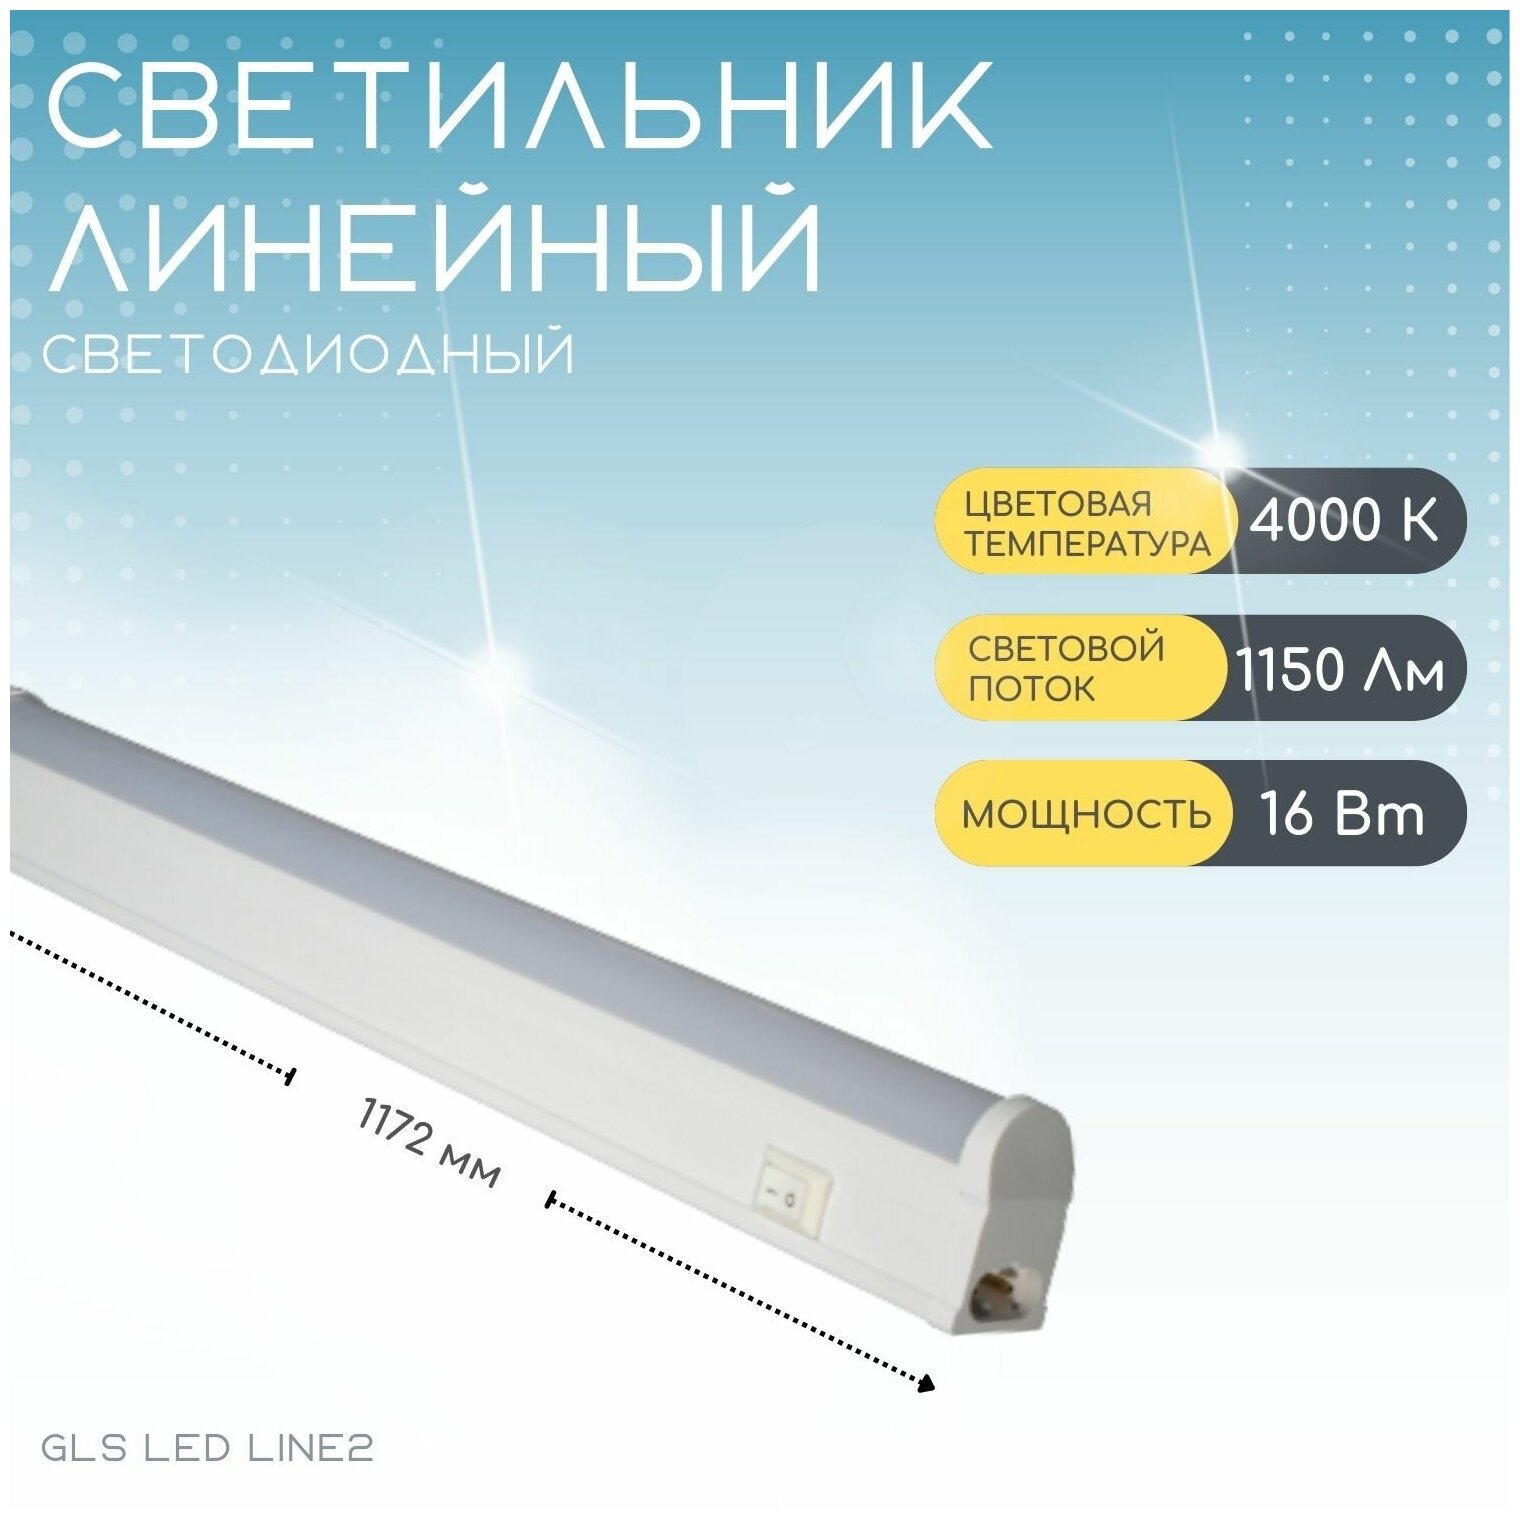 Светильник линейный светодиодный с выключателем GLS LED Line 2 / для кухни шкафов стеллажей / 220V/ 4000К/ 16Вт/ 1172 мм белый